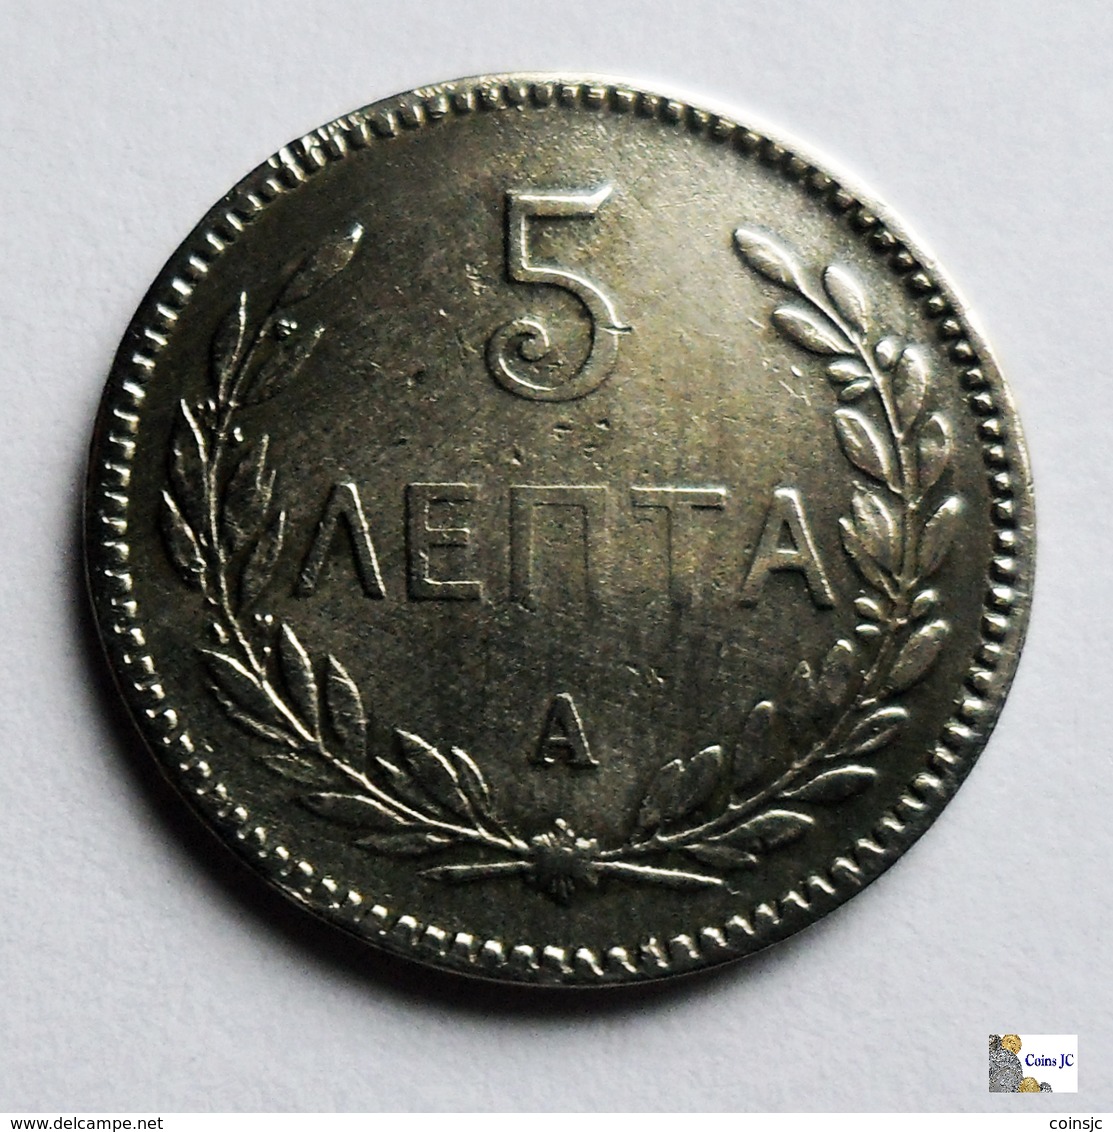 GREECE - CRETE  - 5 Lepta - 1900A - Griechenland